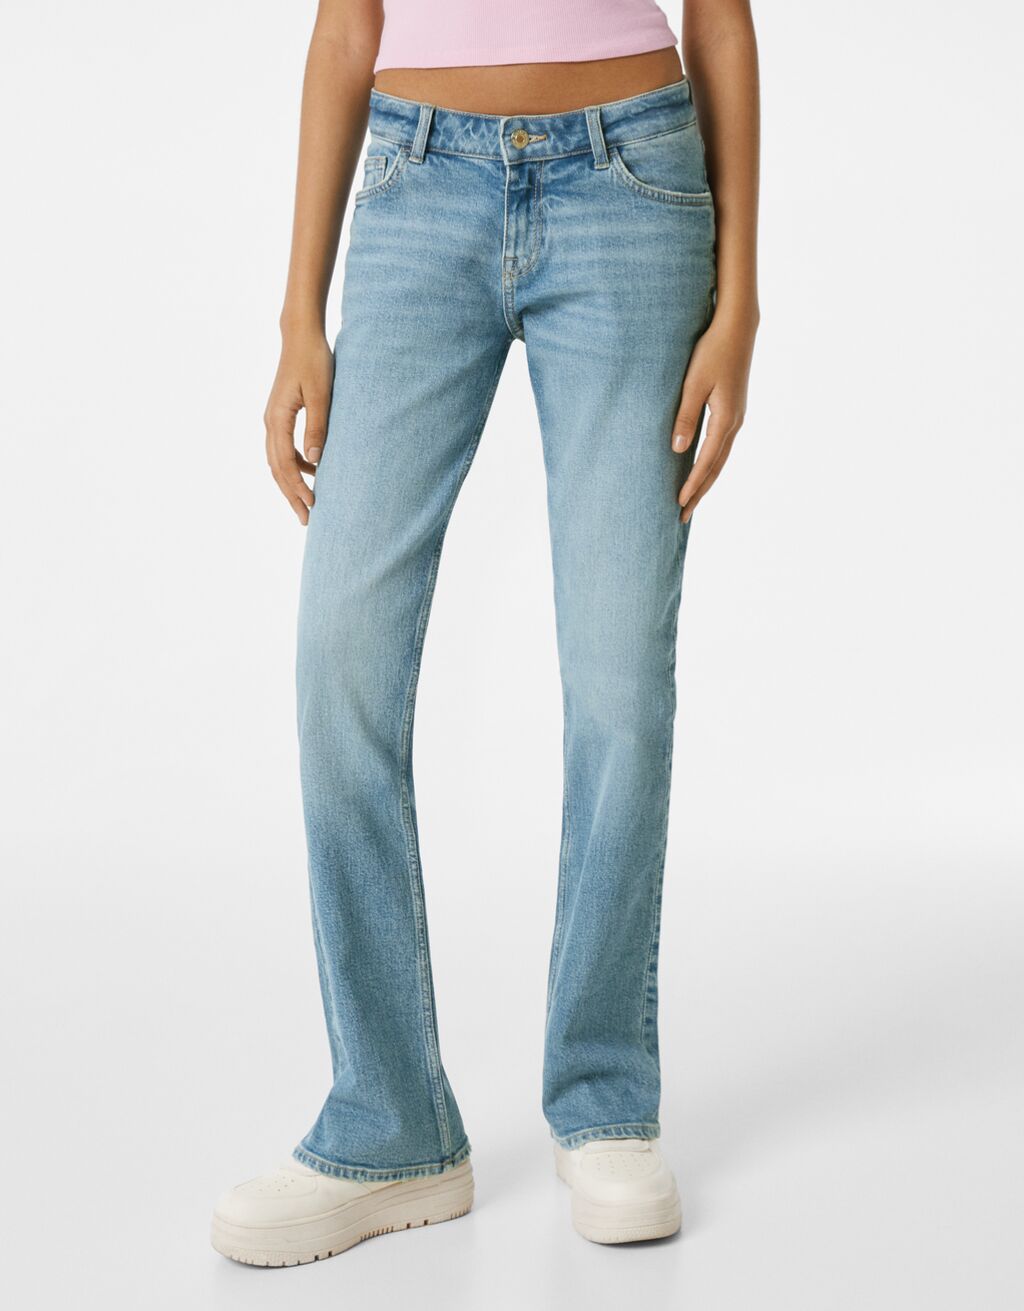 Zvonové džíny s nízkým pasem comfor fit